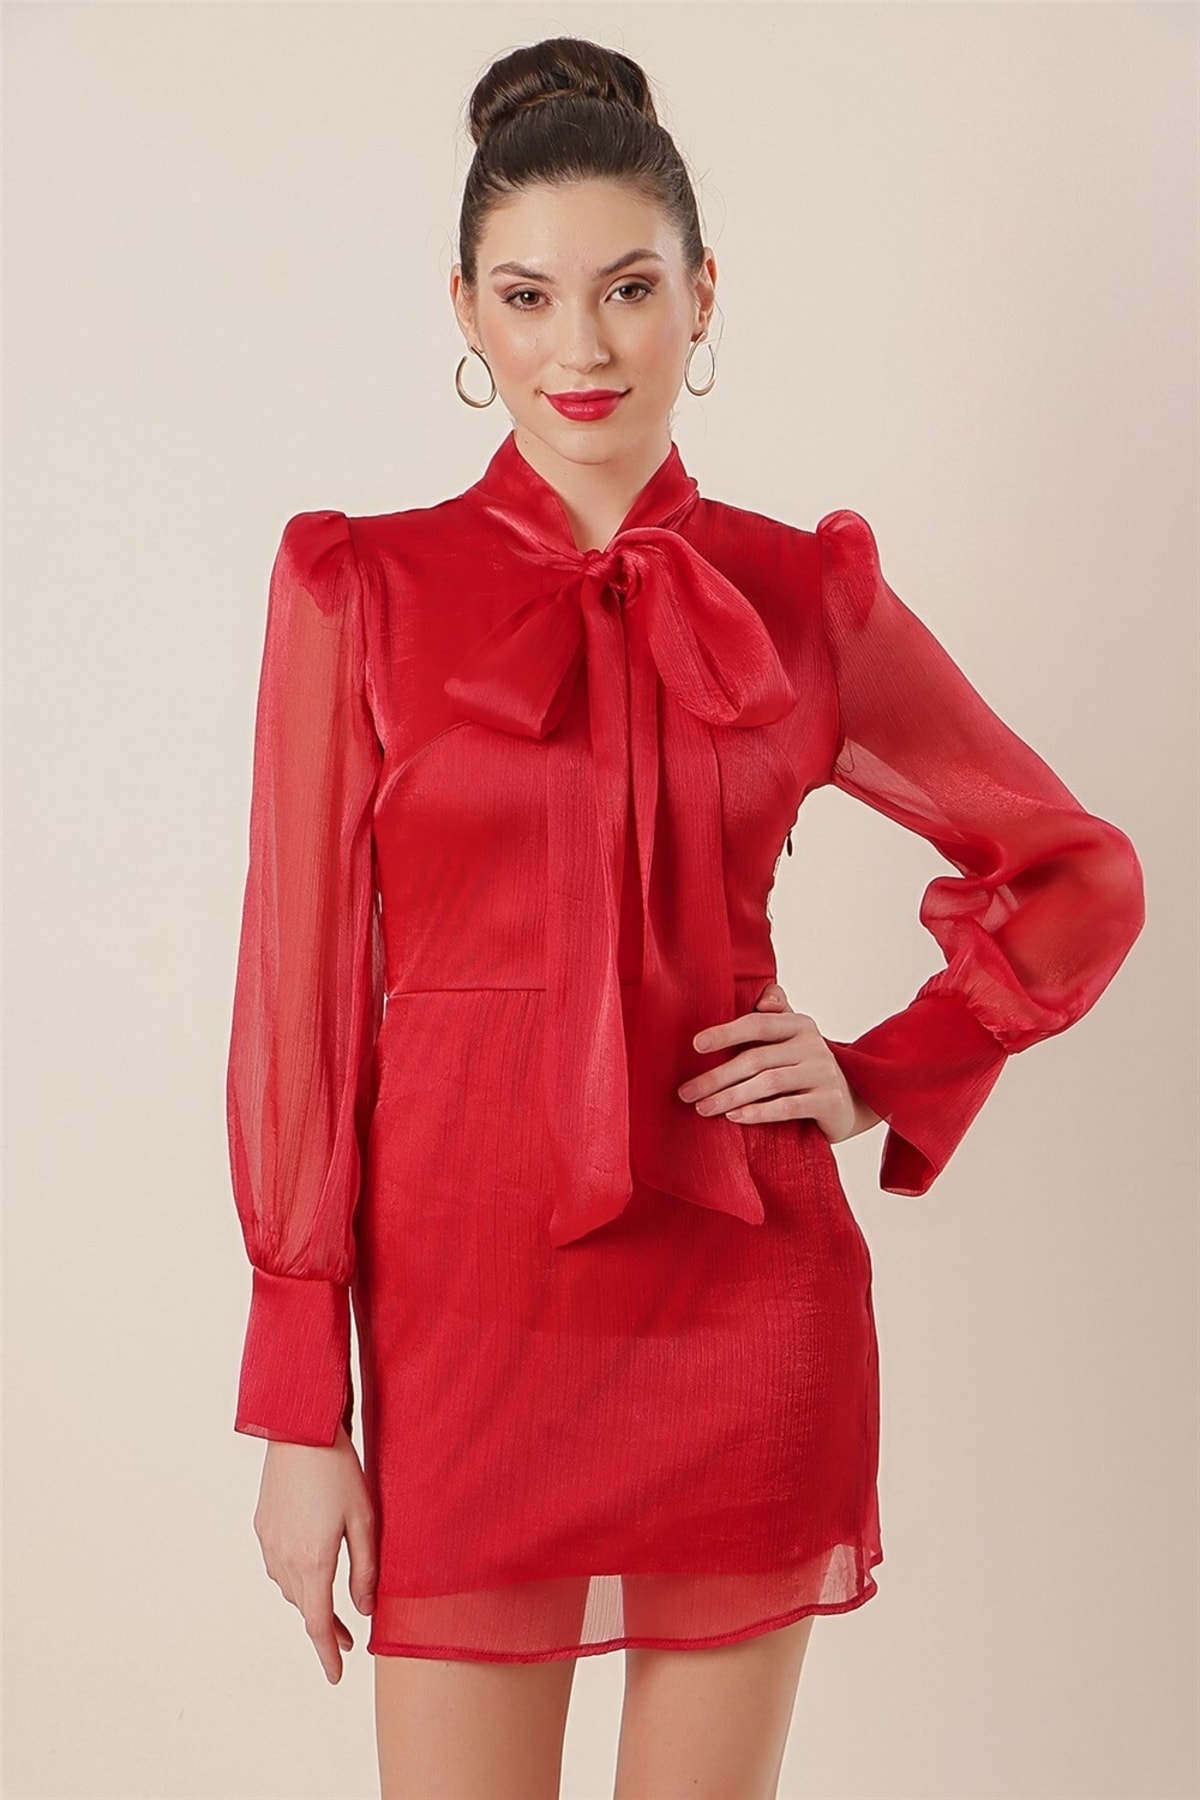 Levně By Saygı límec kravata lemované organzové šaty červené